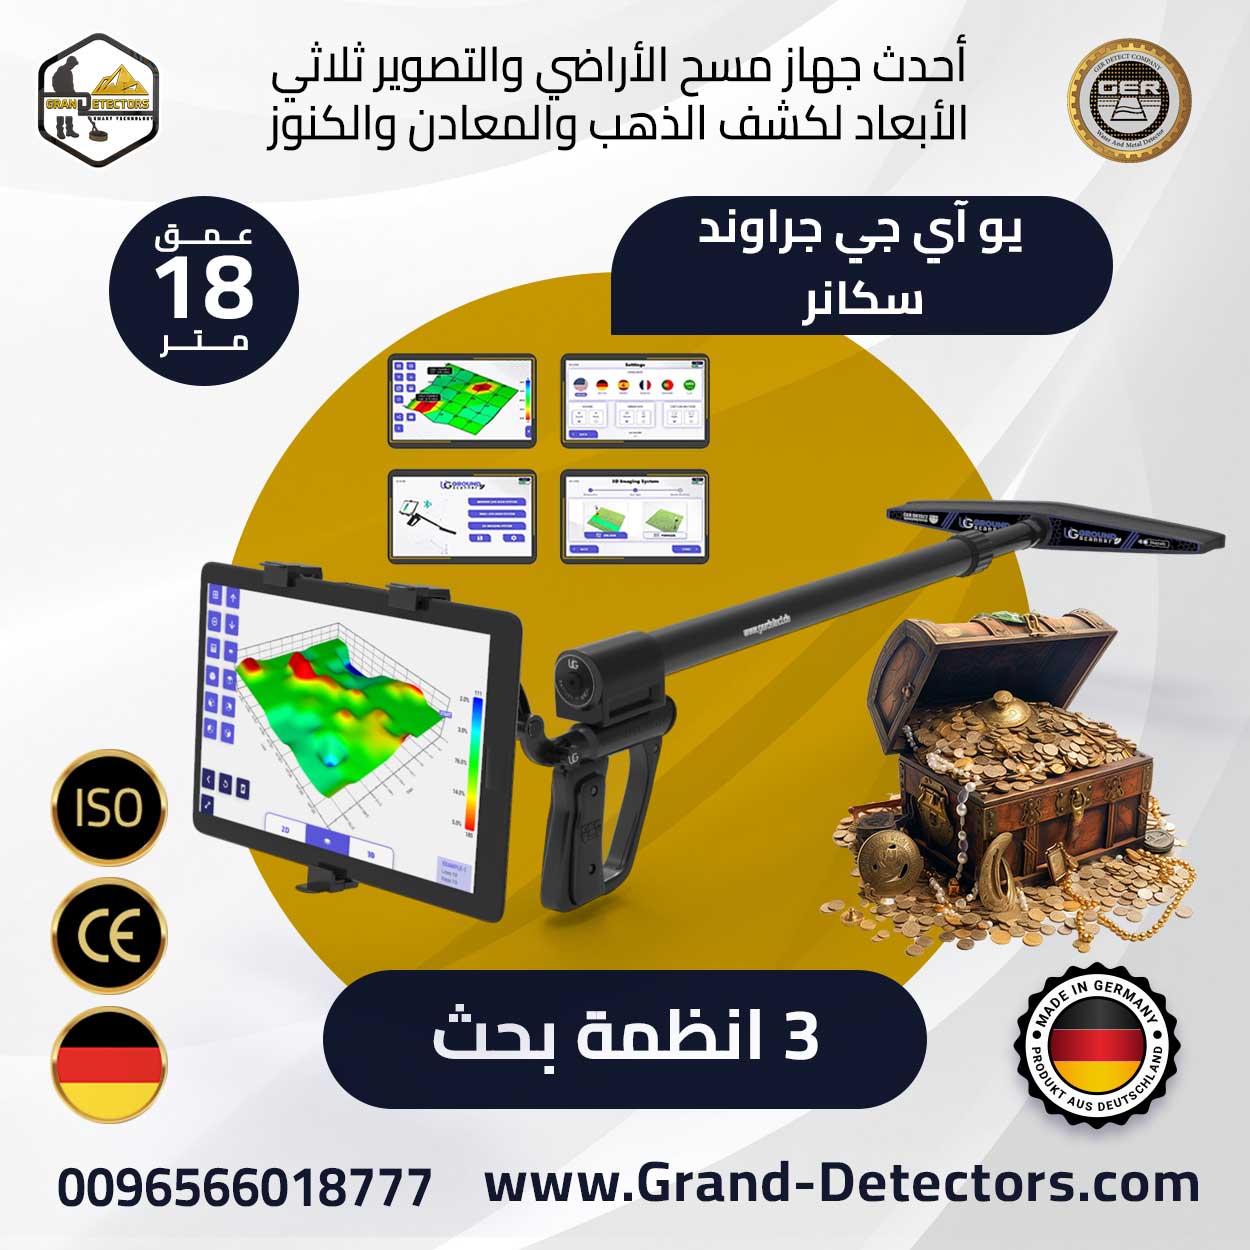 grand detectors1